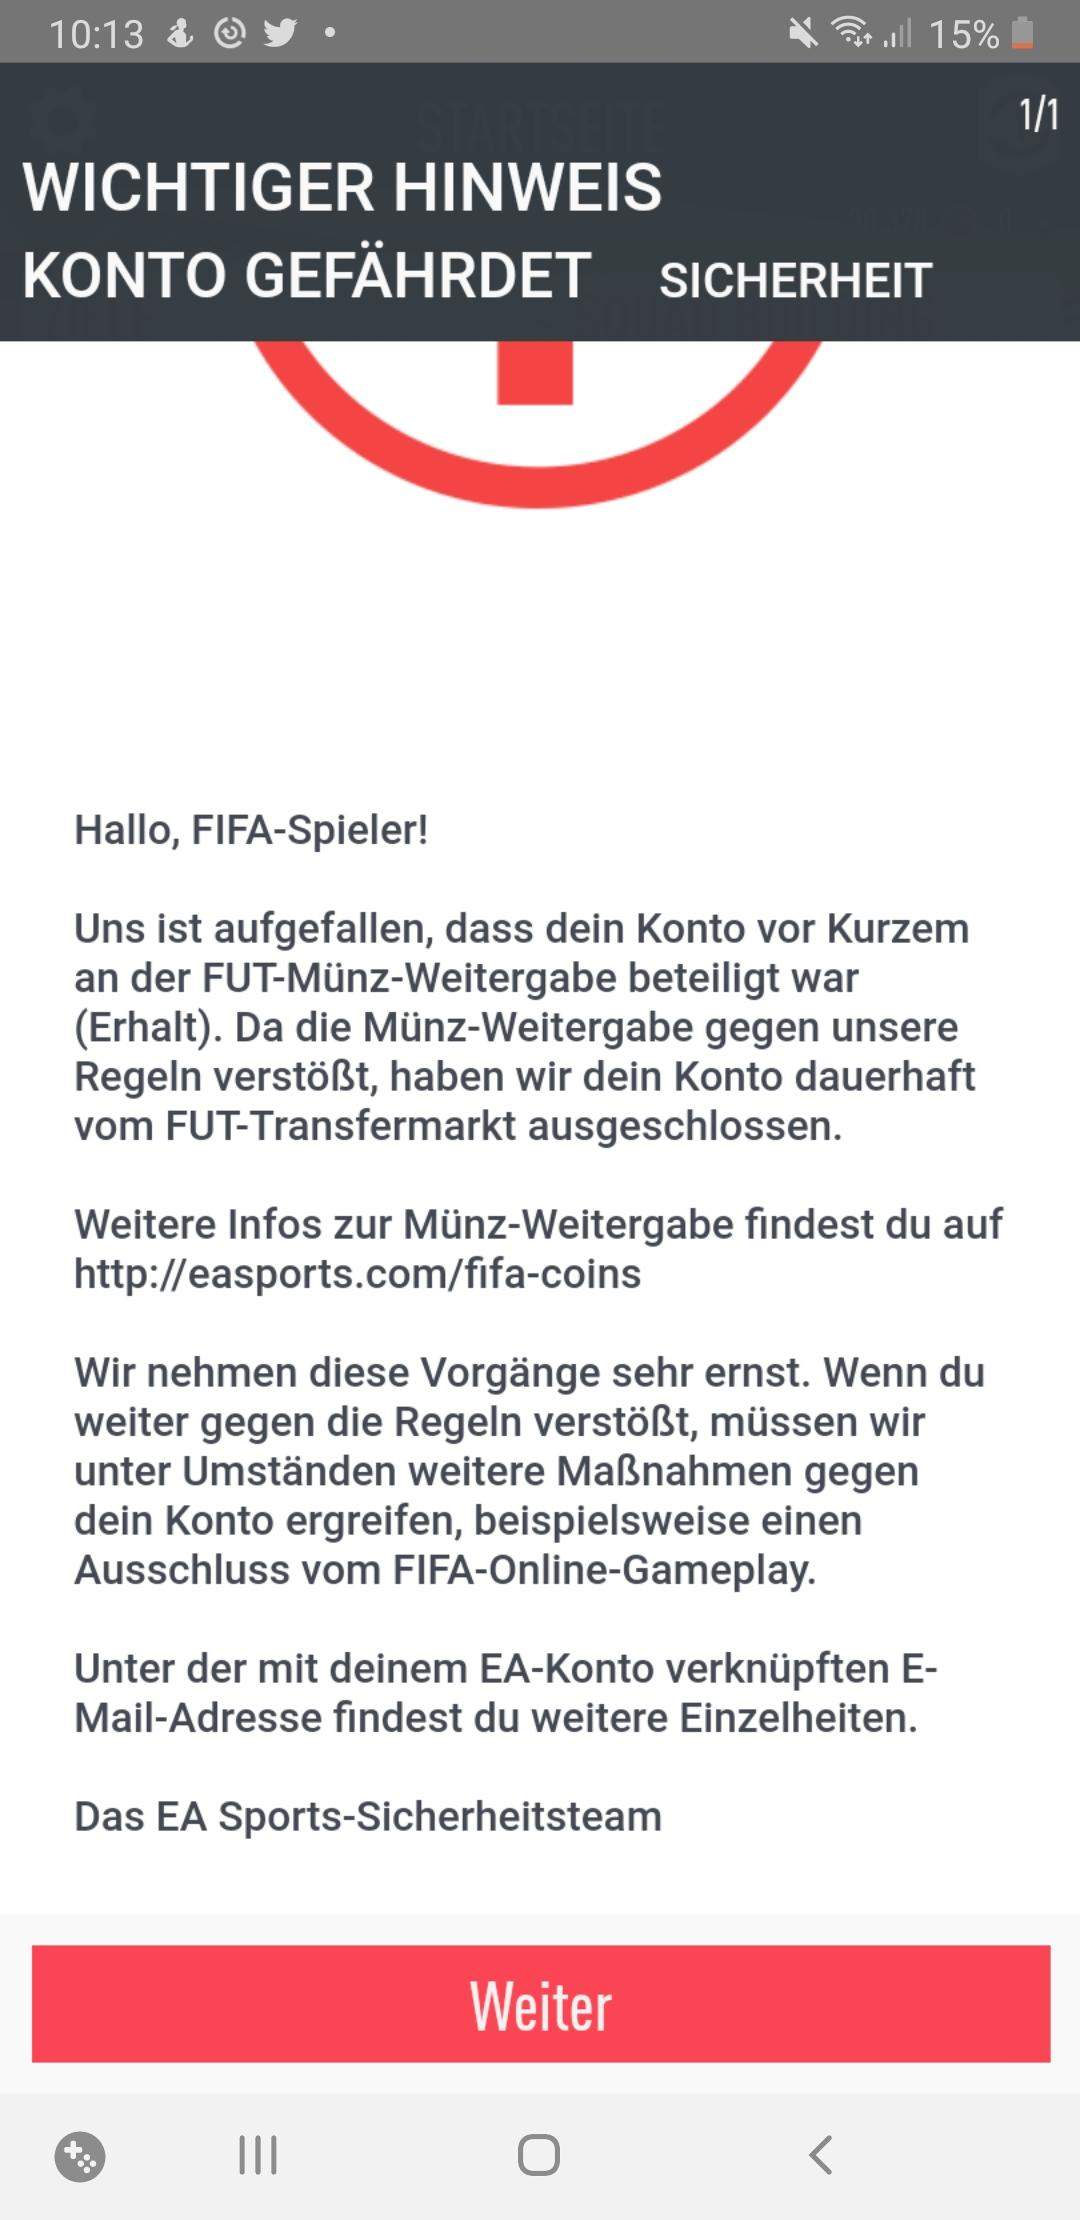 FIFA 20 Bann? (Computer, Spiele und Gaming)